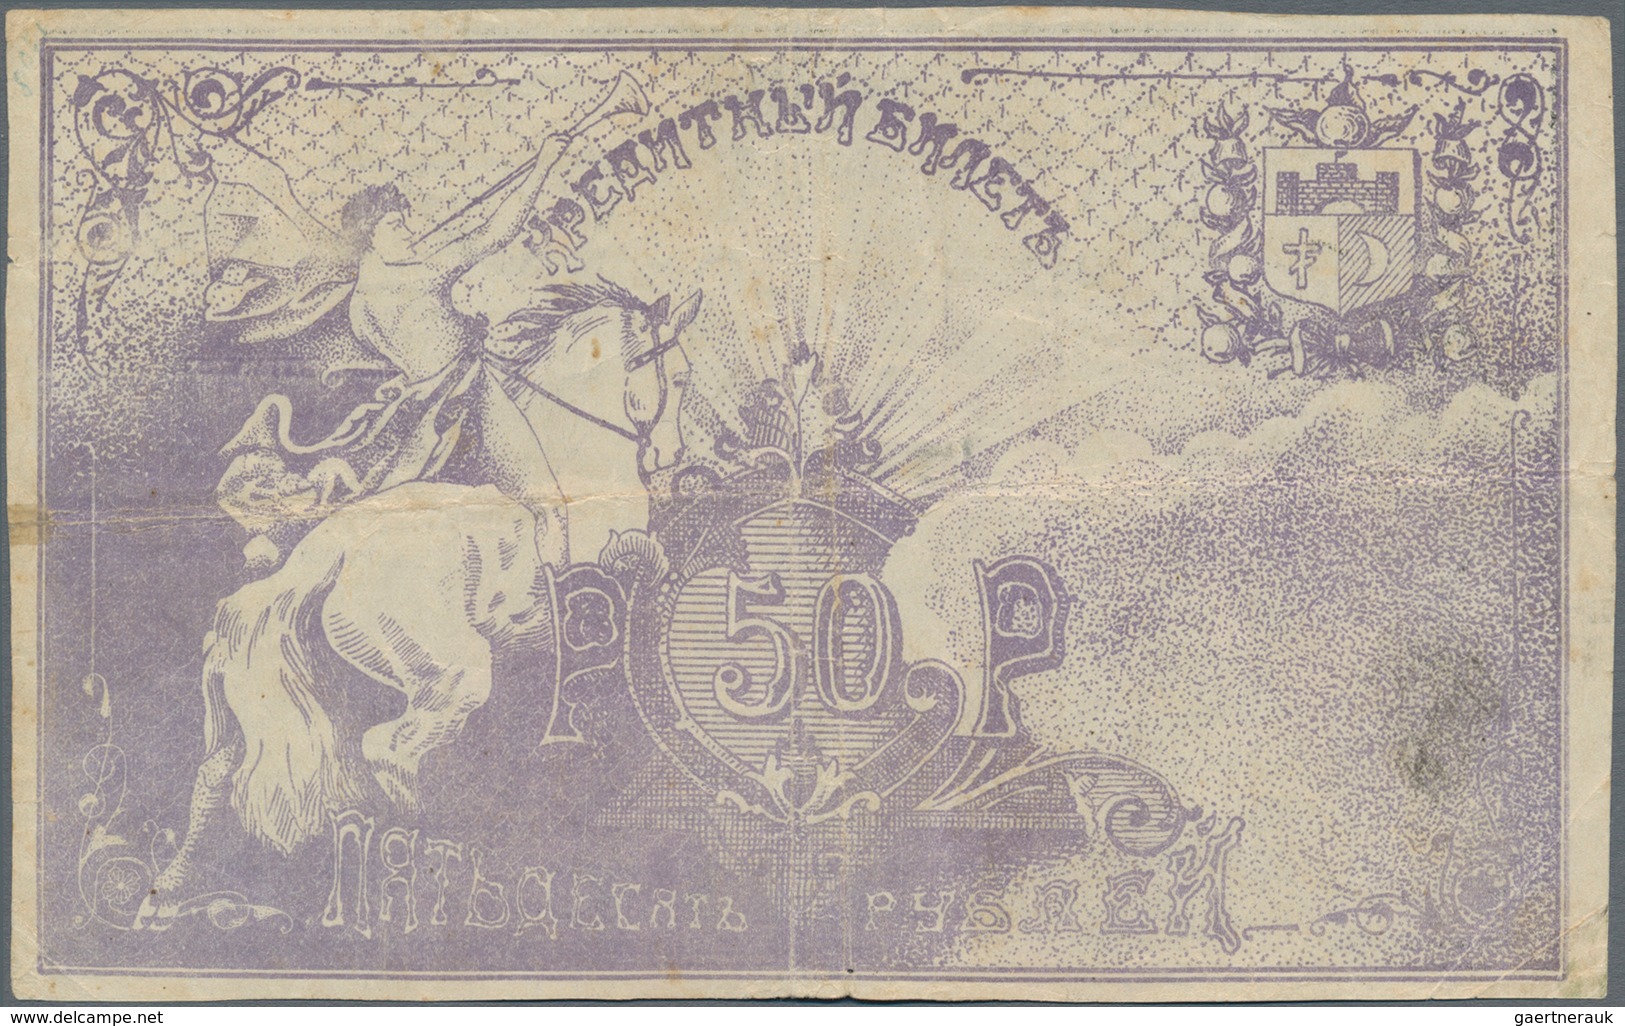 Russia / Russland: Central Asia - Semireche Region 50 Rubles 1918, P.S1123 (R. 20608, K. 8), Conditi - Russland